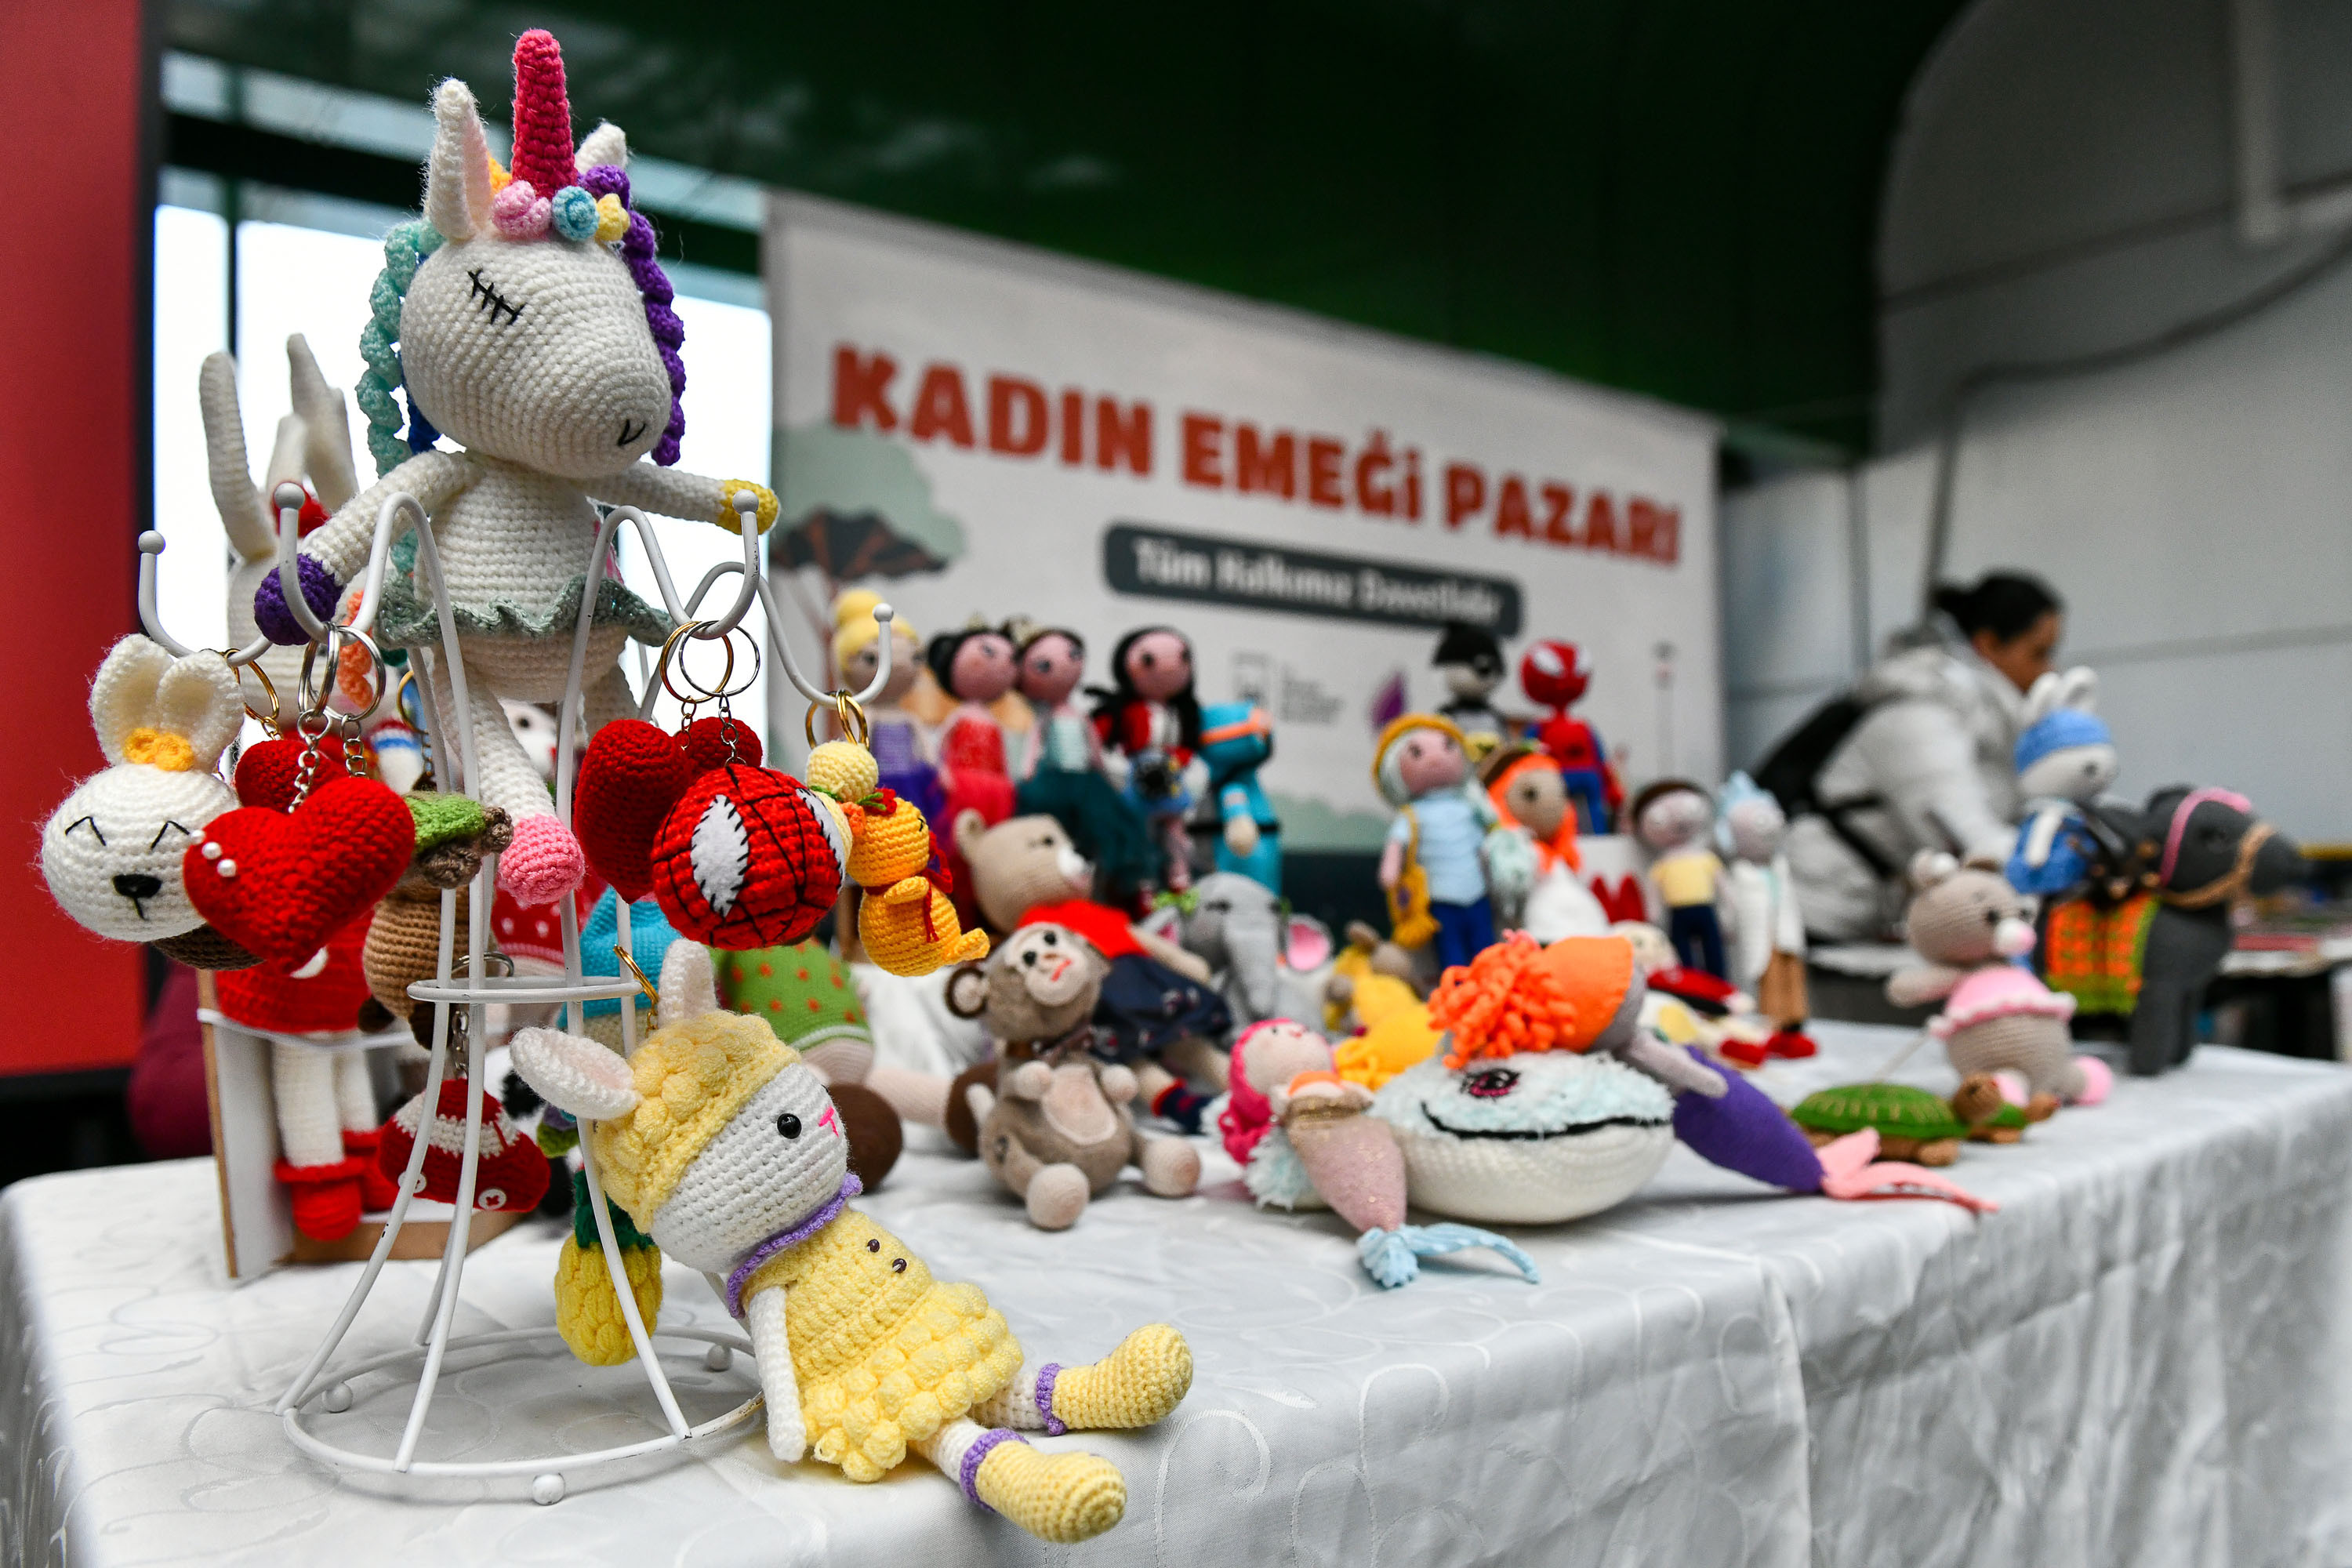 Ankara Büyükşehir Belediyesi AŞTİ'de 'Kadın emeği pazarı' kurdu